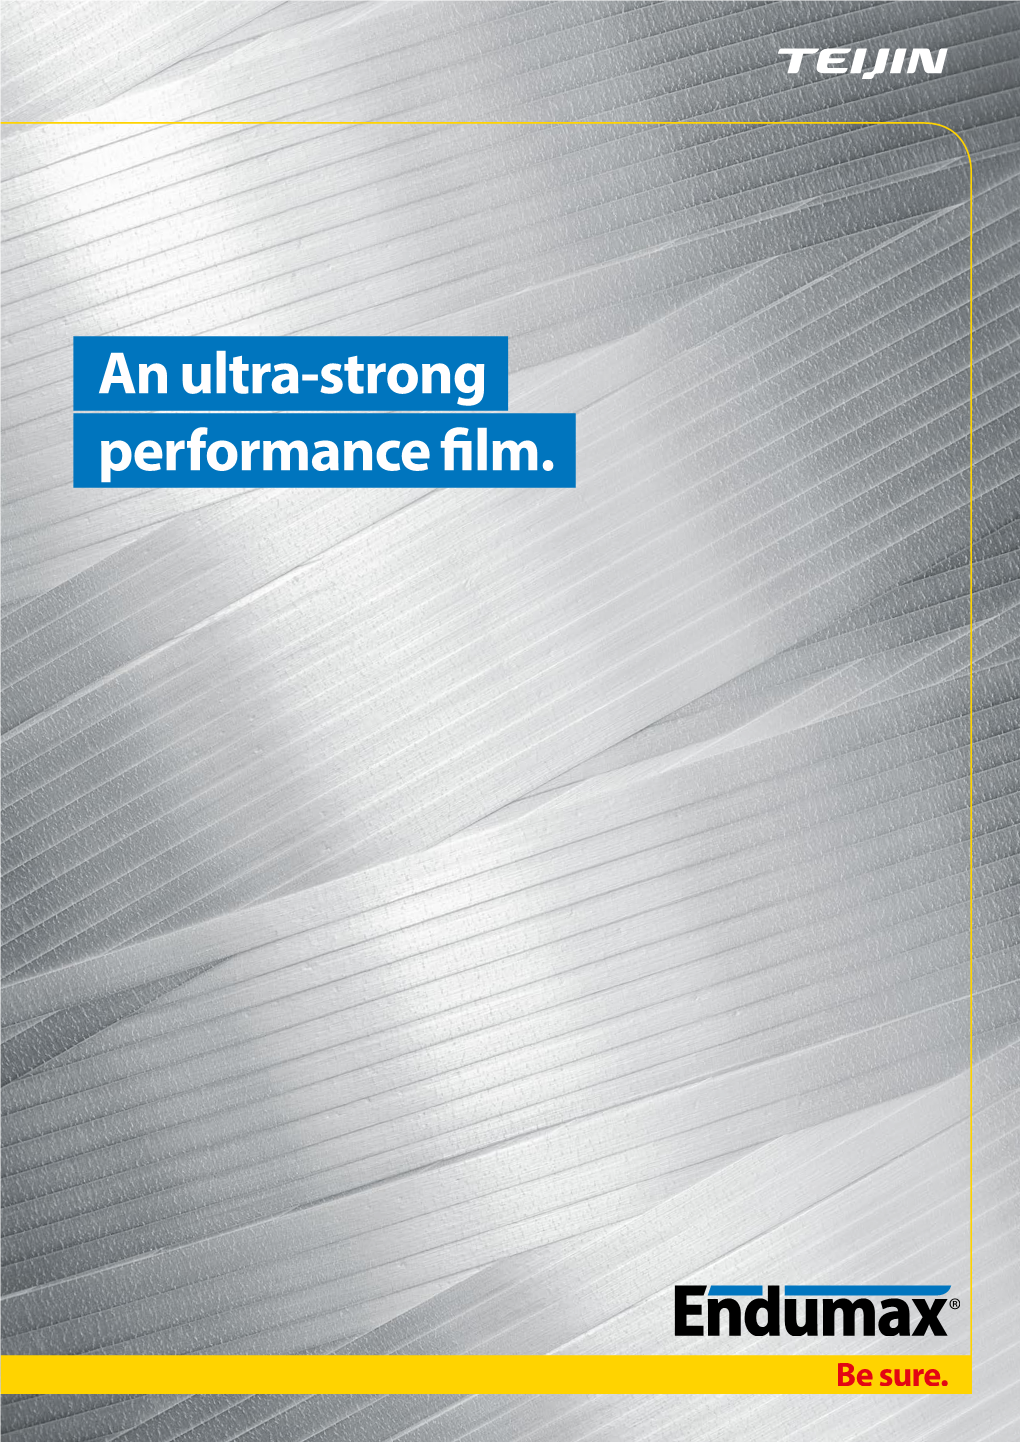 An Ultra-Strong Performance Film. 2 Endumax® 3